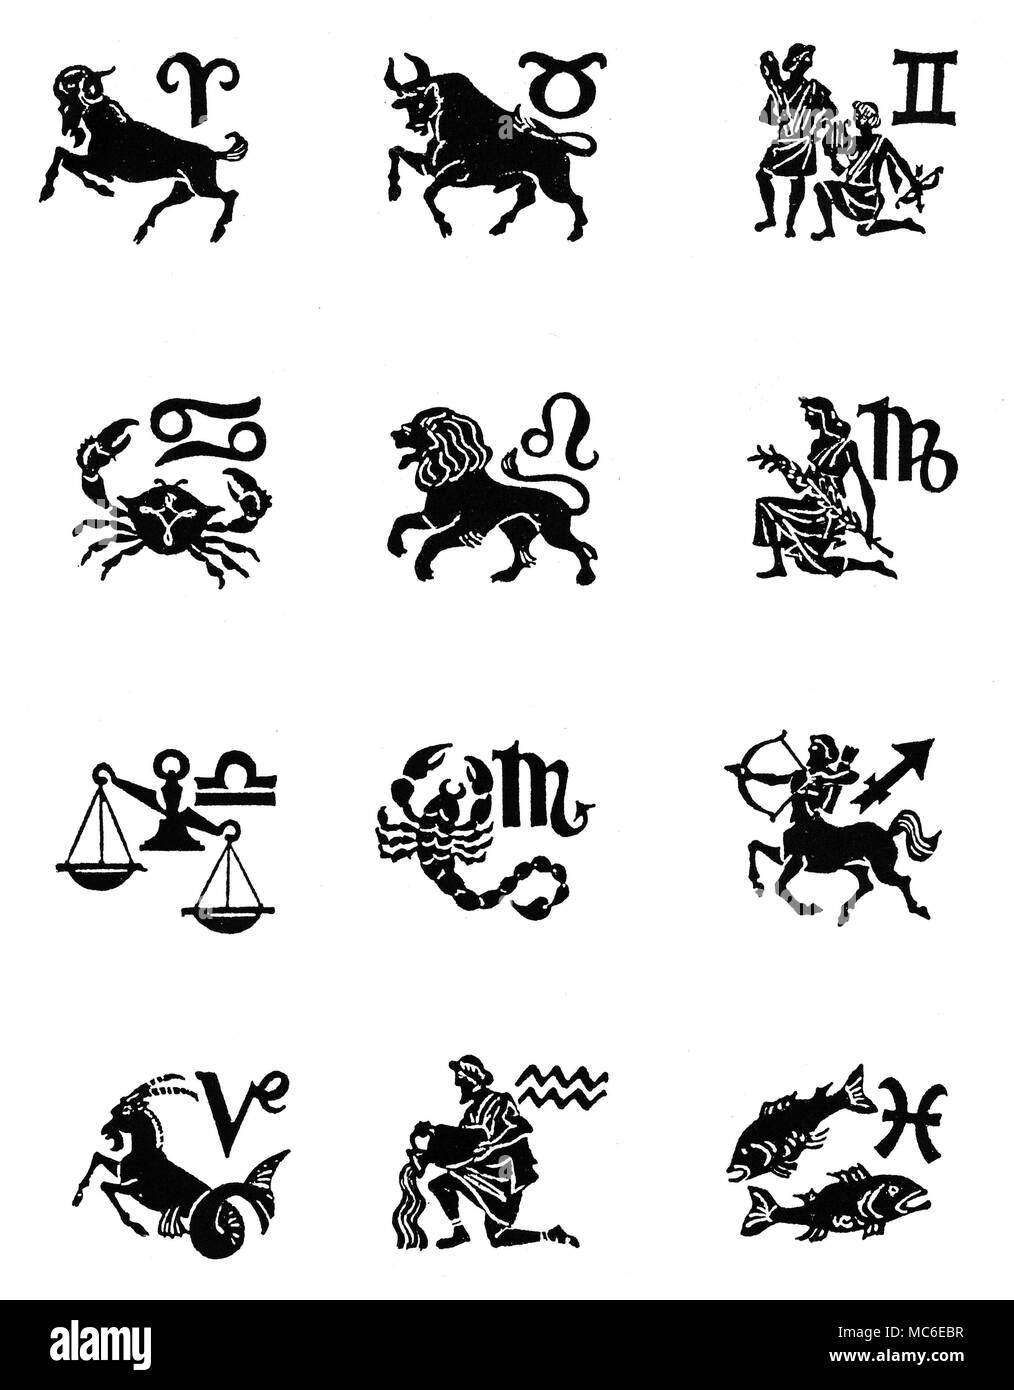 ZODIACS - doce signos del zodiaco de doce imágenes, con sus correspondientes sigils, dispuestos en cuatro registros (arriba), Aries, Tauro, Géminis, (segunda fila), Cáncer, Leo, Virgo (tercera fila), Libra, Scoprio, Sagitario, y (cuarta fila), Capricornio, Acuario y Piscis. Diseñado circa 1920. Foto de stock